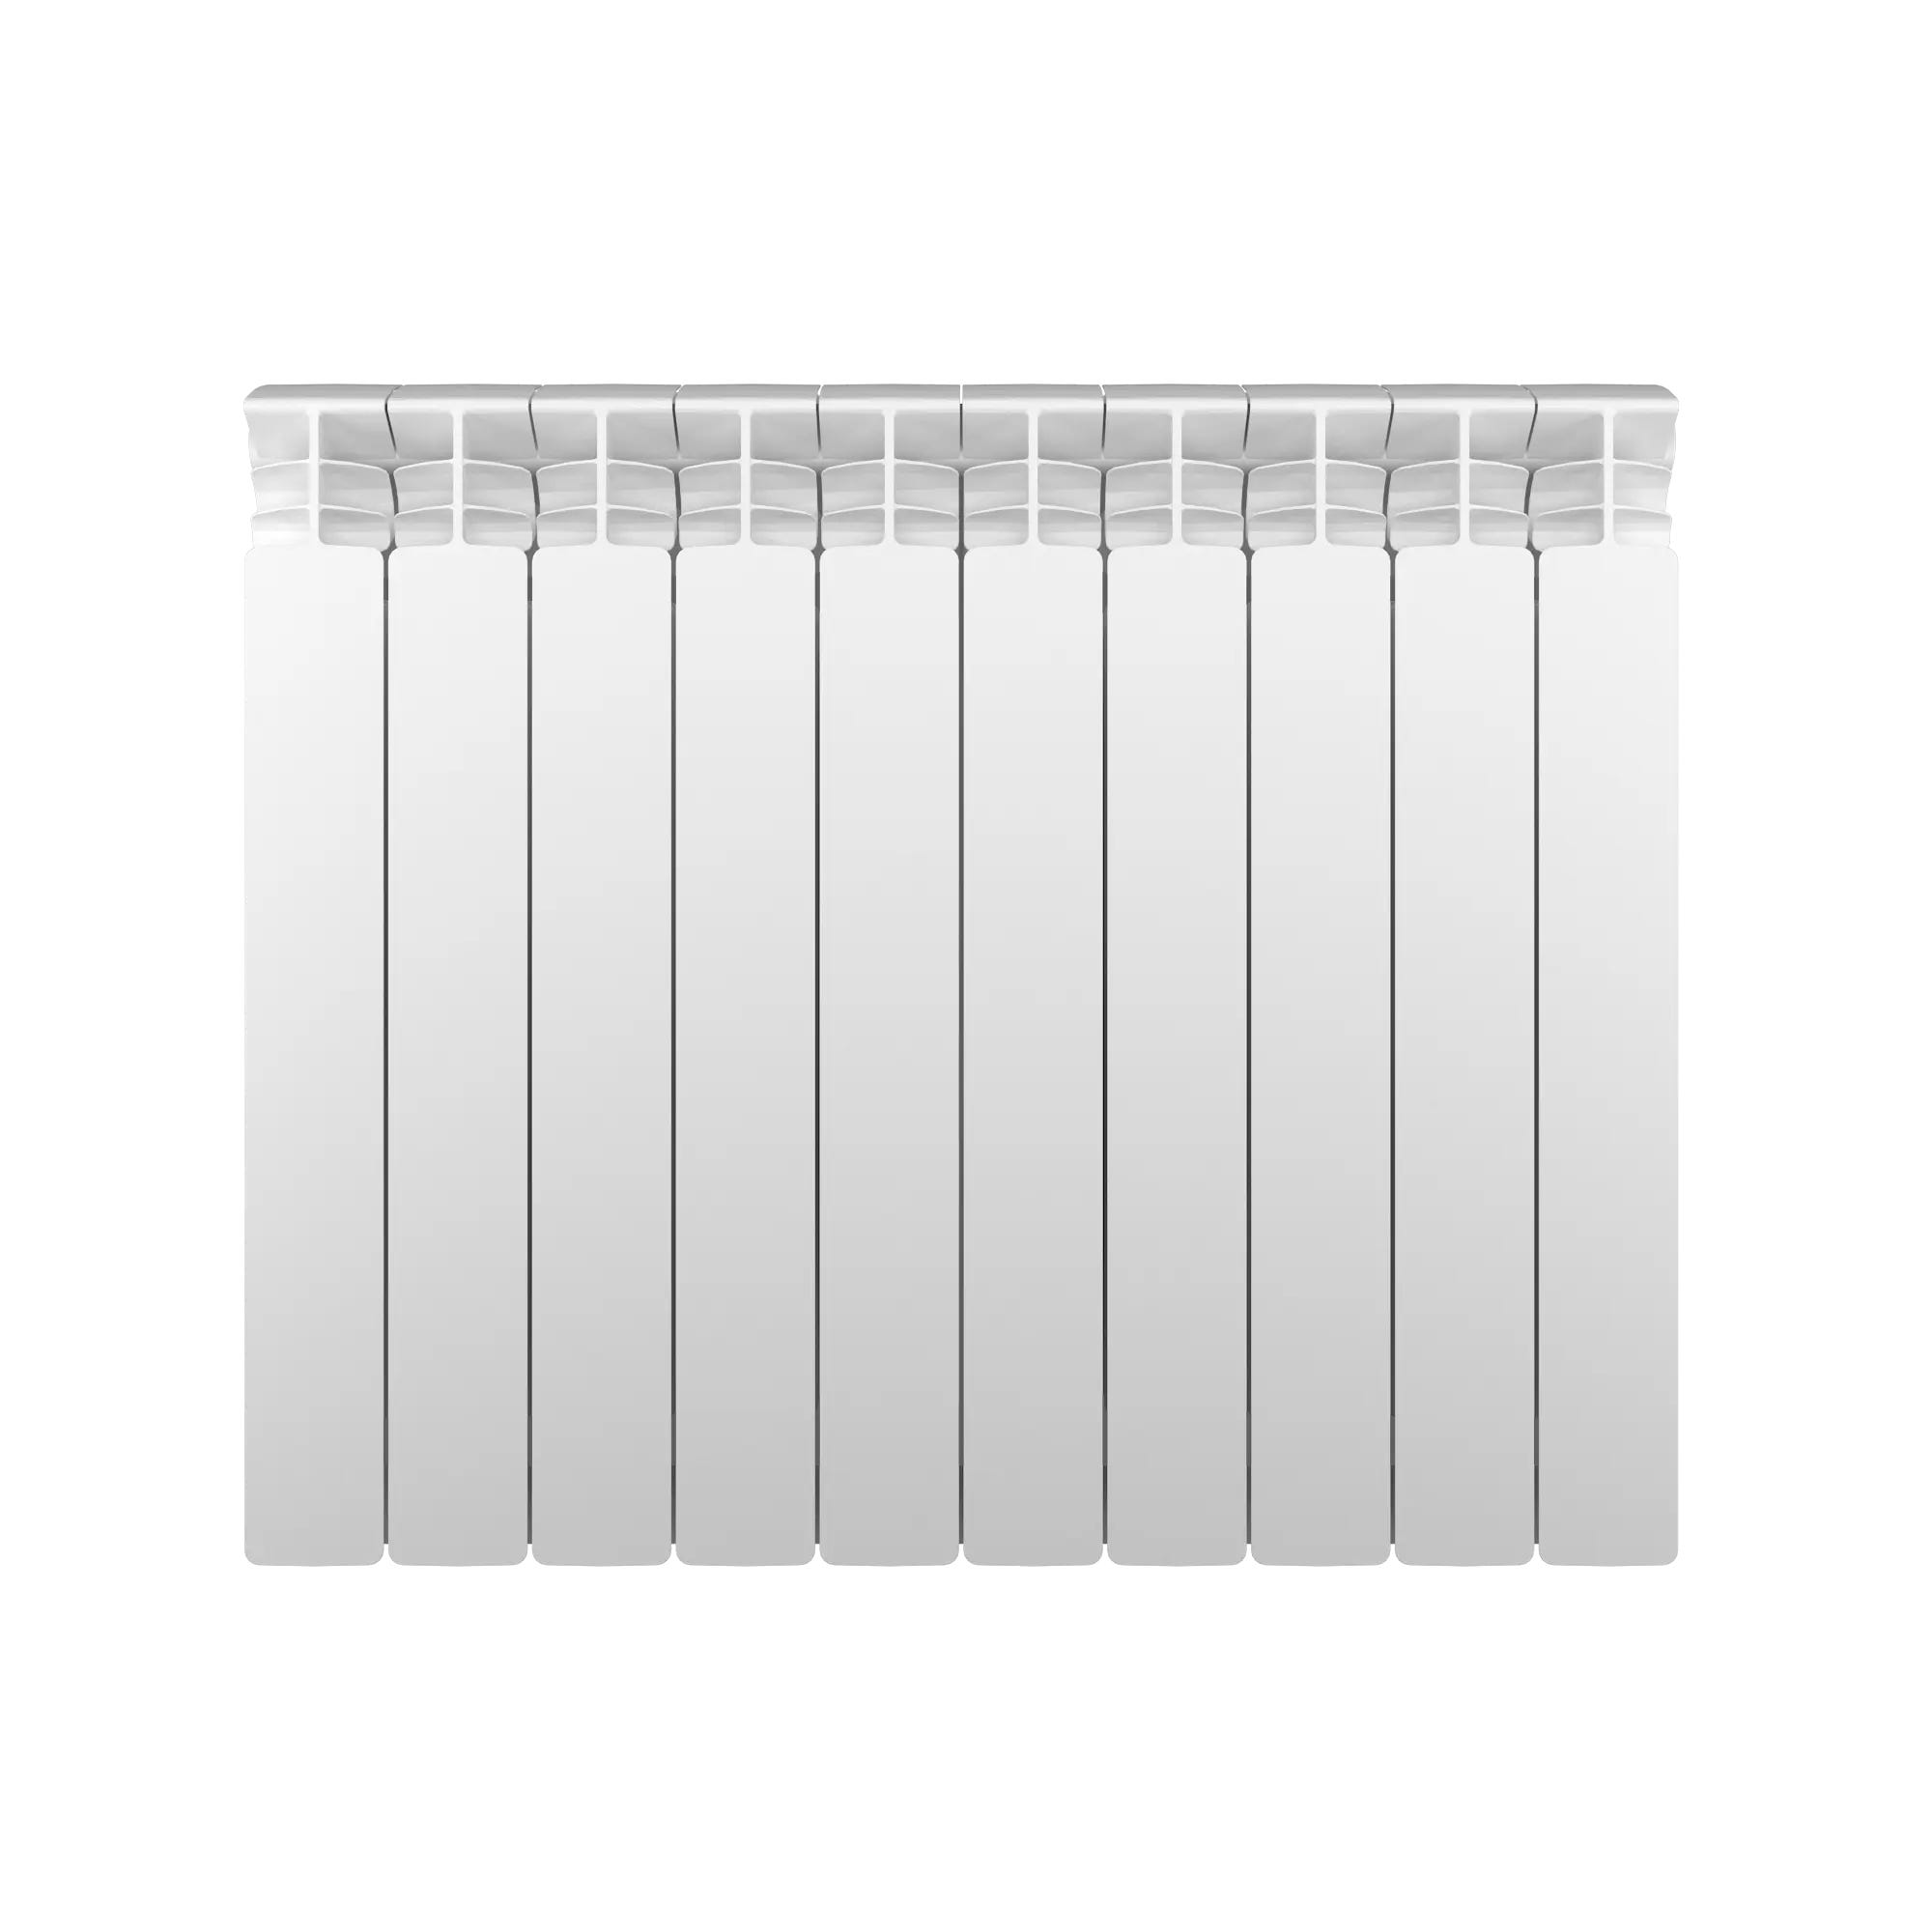 Radiatore acqua calda EQUATION 600/100 in alluminio 4 colonne, 10 elementi  interasse 60 cm, bianco